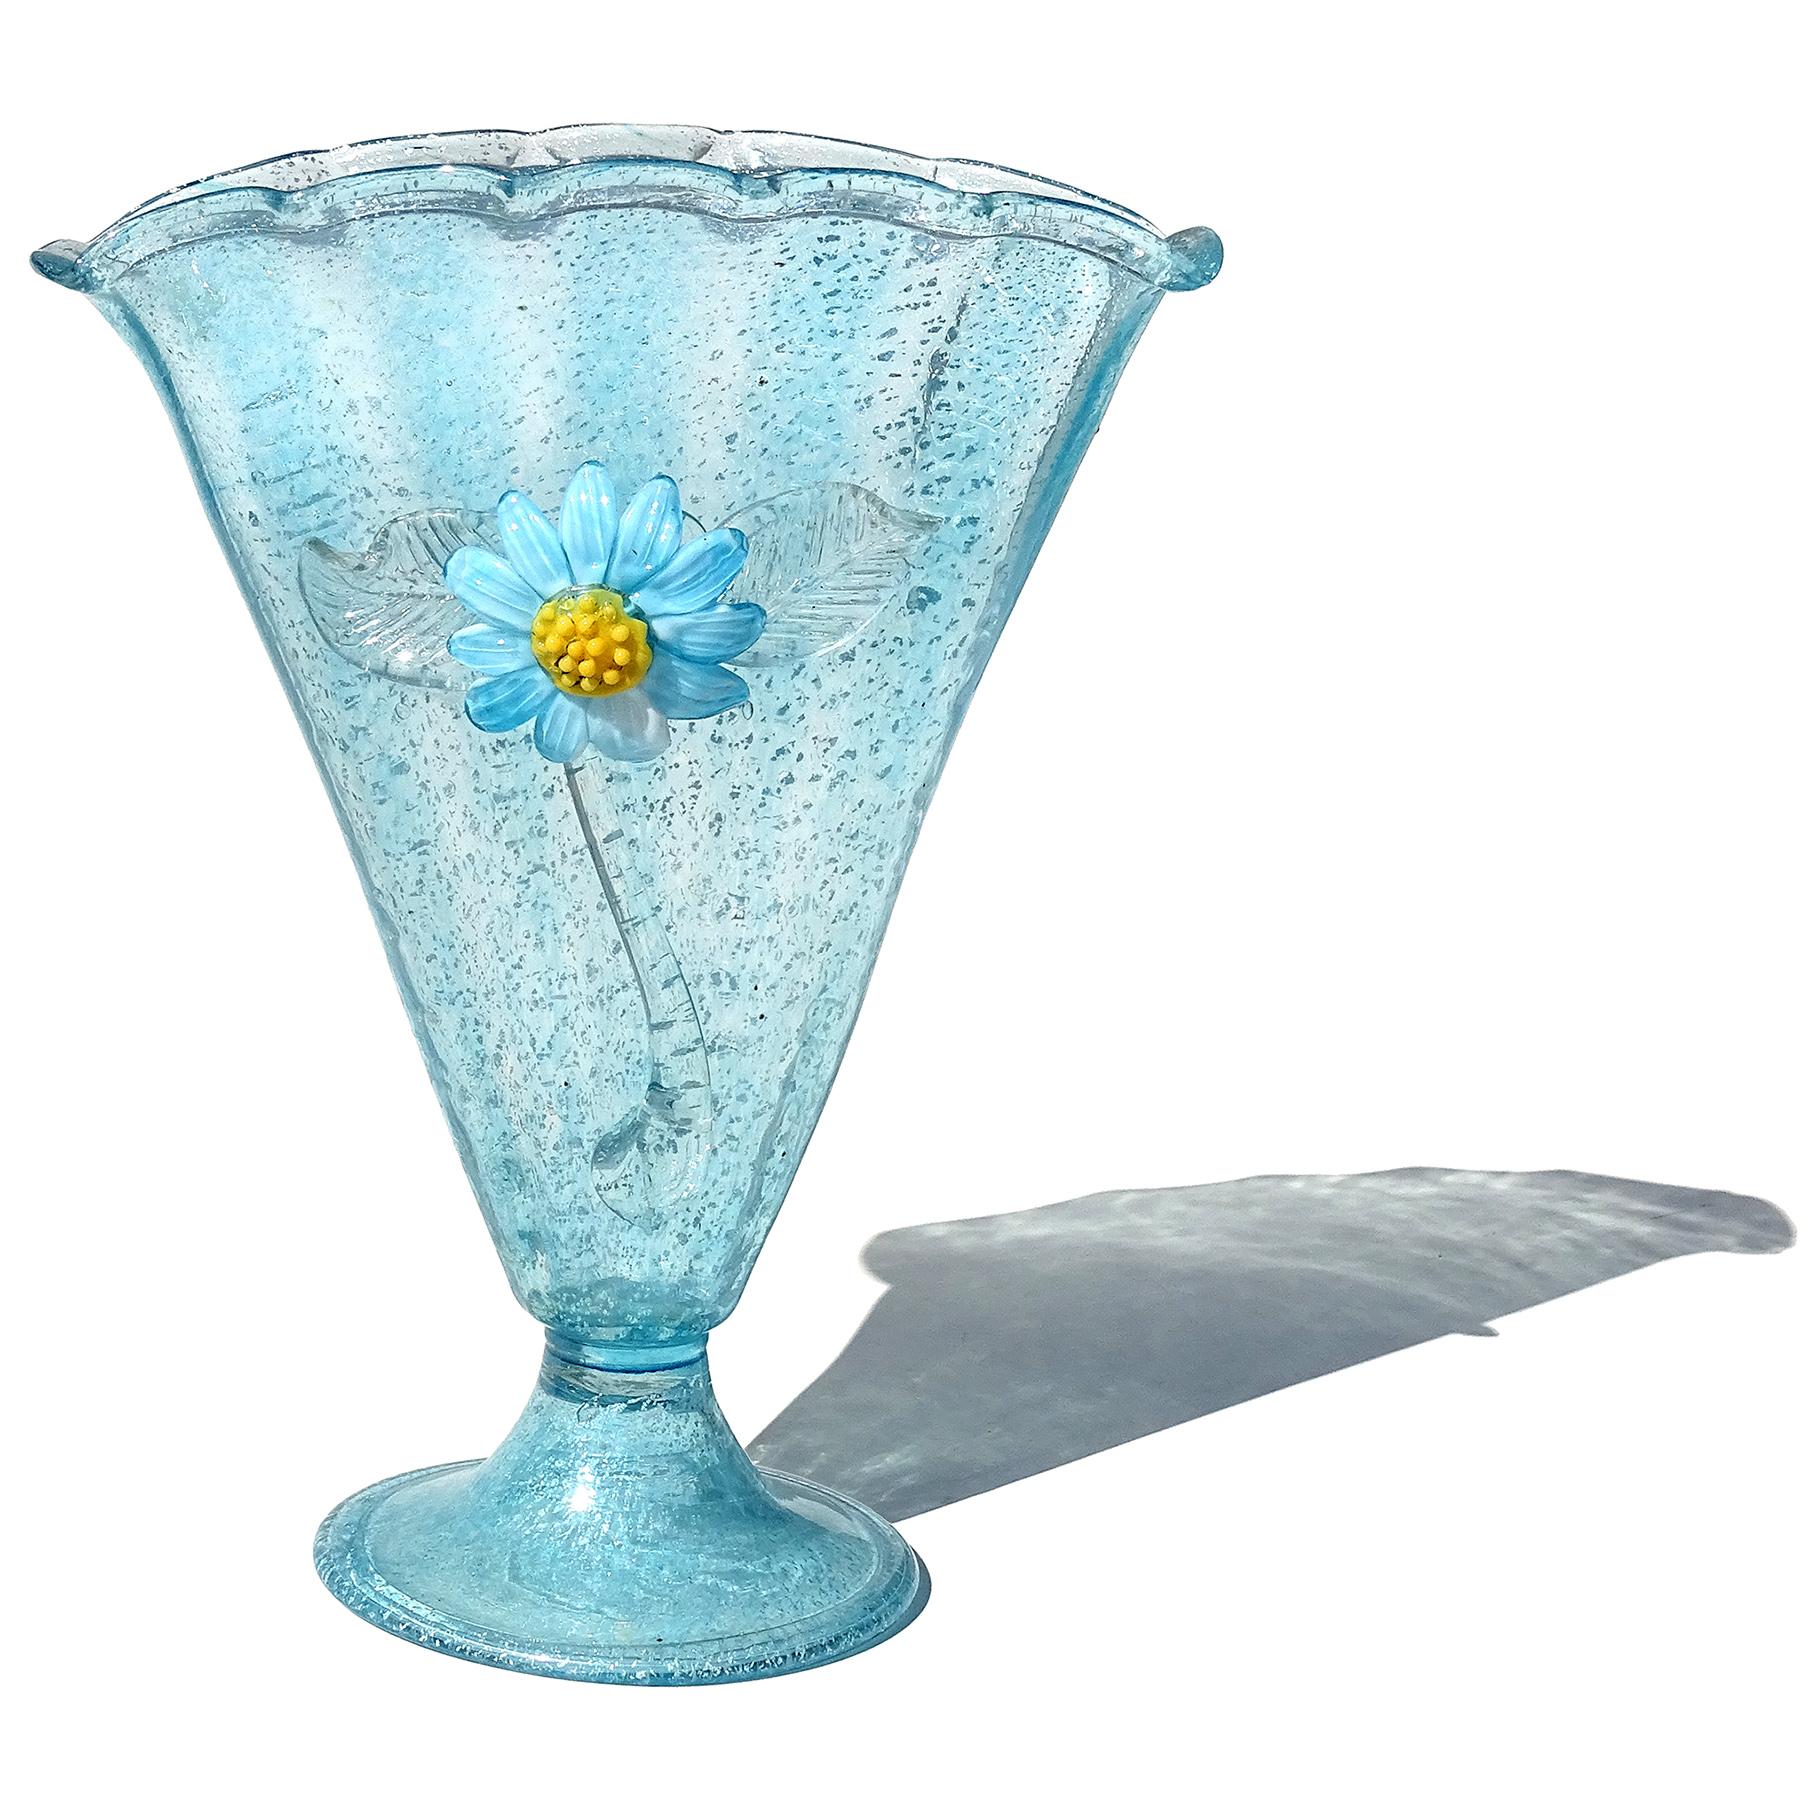 Magnifique vase à pied en forme d'éventail en verre d'art italien soufflé à la main à Murano en bleu et mouchetures d'argent. Attribué à la société Fratelli Toso, avec un vase similaire illustré dans le livre de la société. Le vase est abondamment